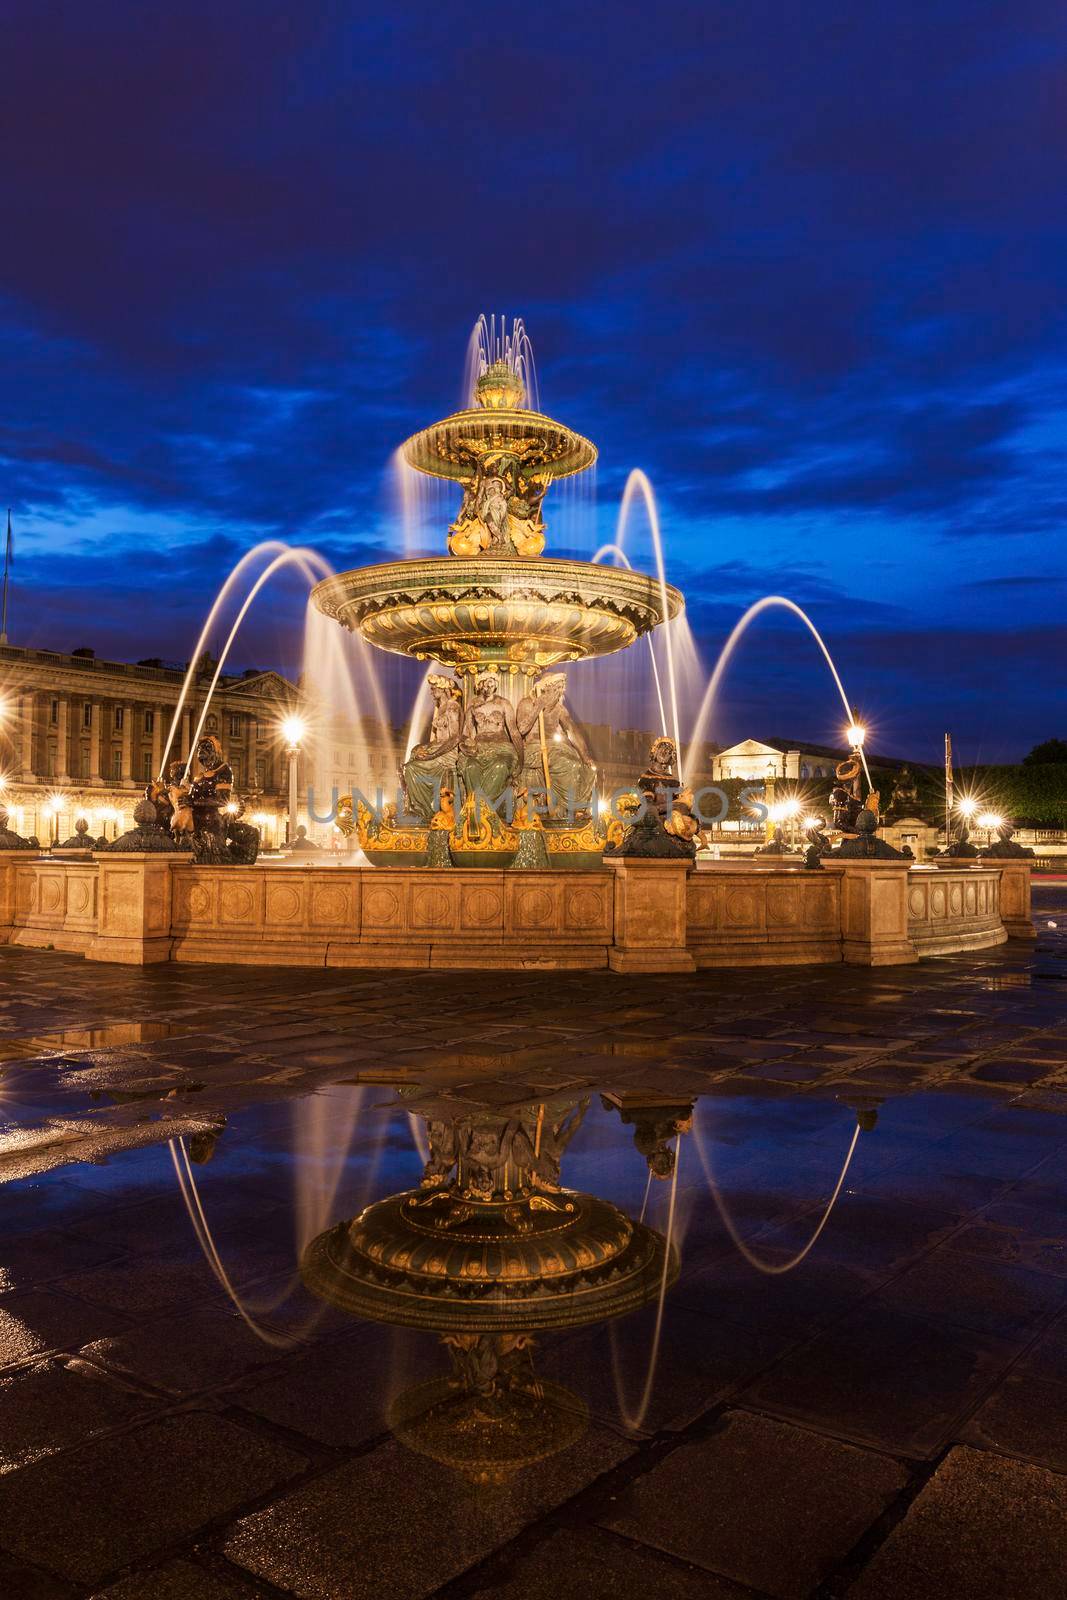 Fontaine des Fleuves on Place de la Concorde in Paris by benkrut